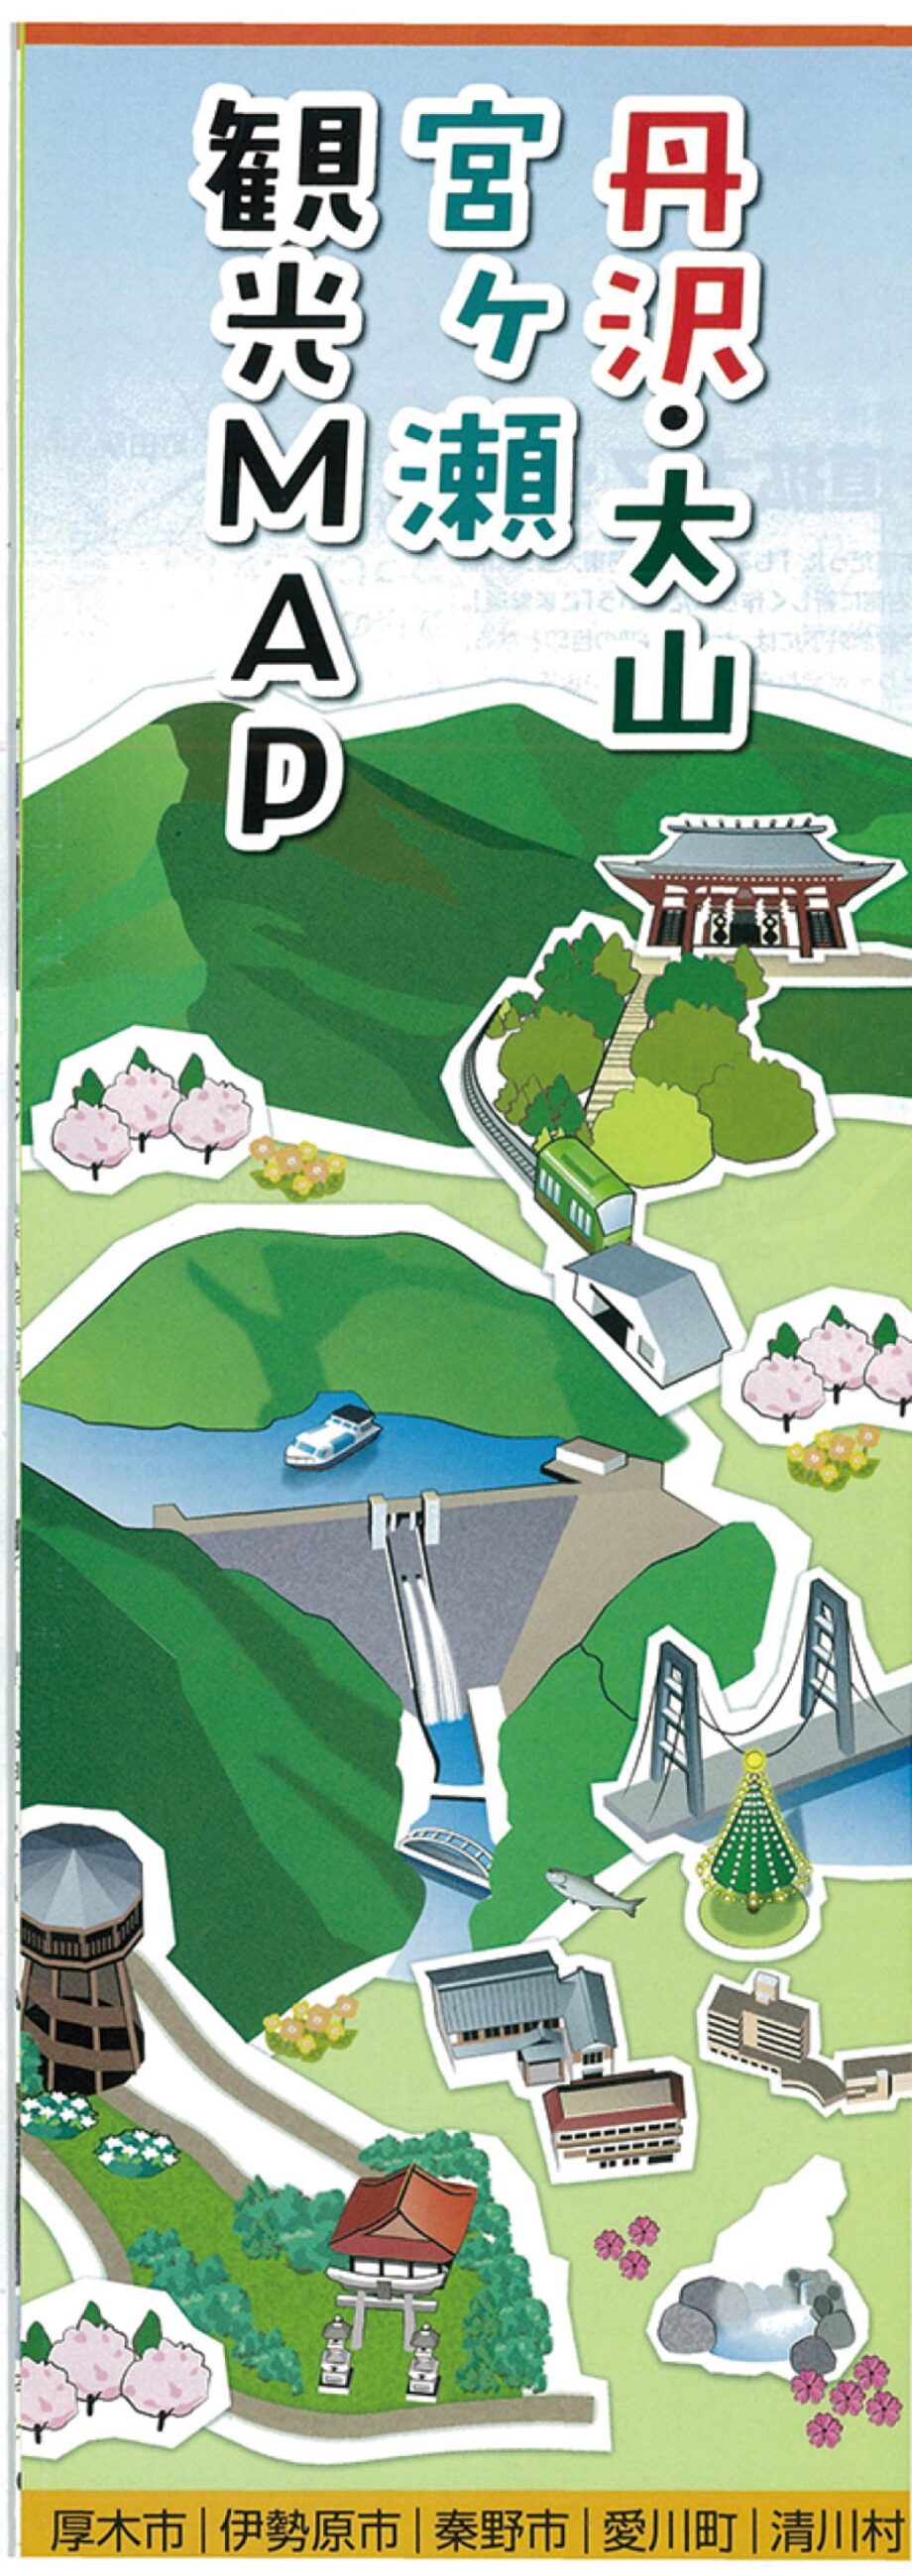 「丹沢・大山・宮ヶ瀬 観光マップ」完成 ６月１日から配布開始